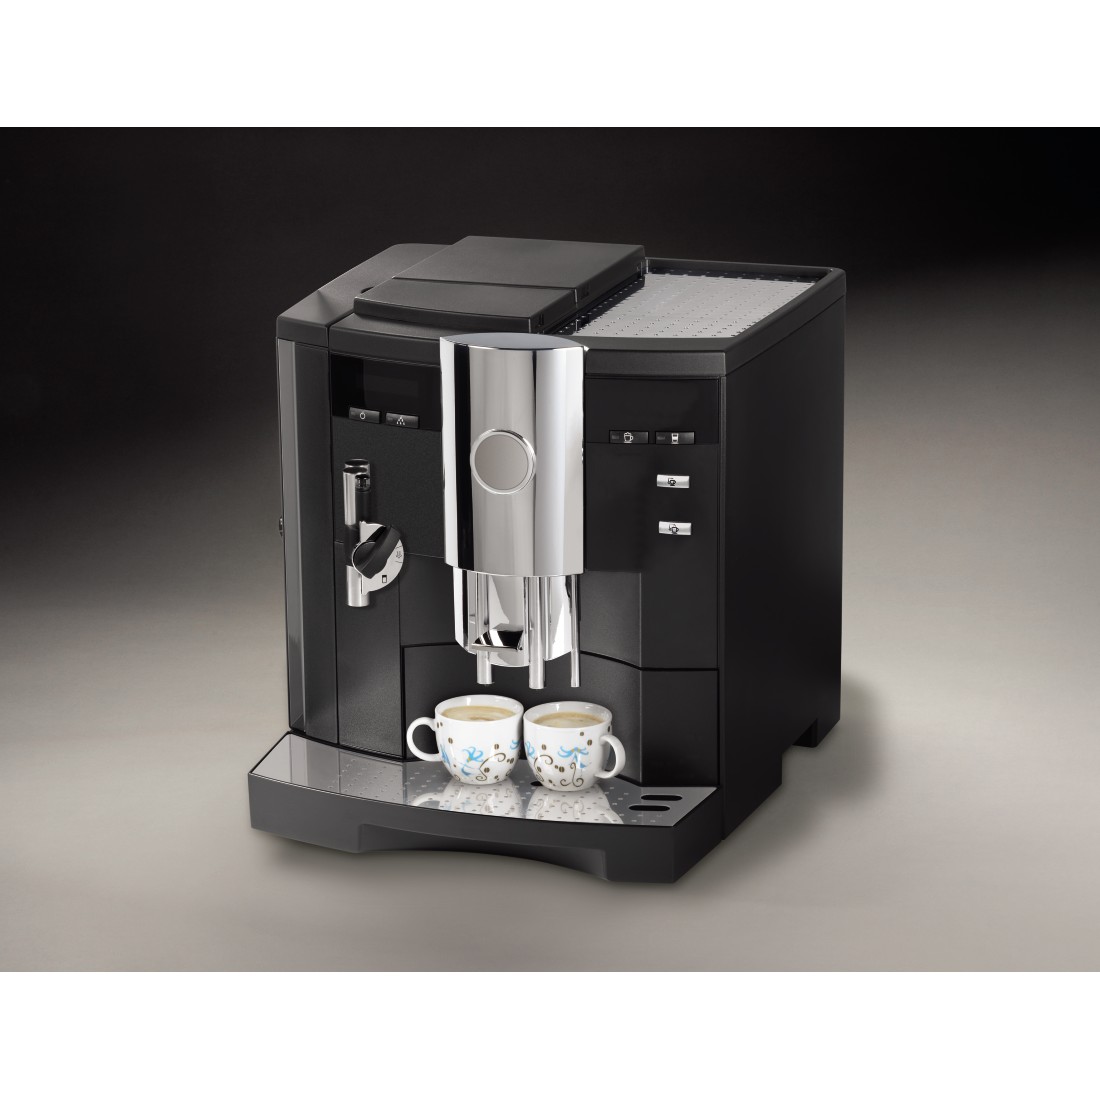 awx3 Druckfähige Anwendung 3 - Xavax, Premium-Entkalker für hochwertige Kaffeeautomaten